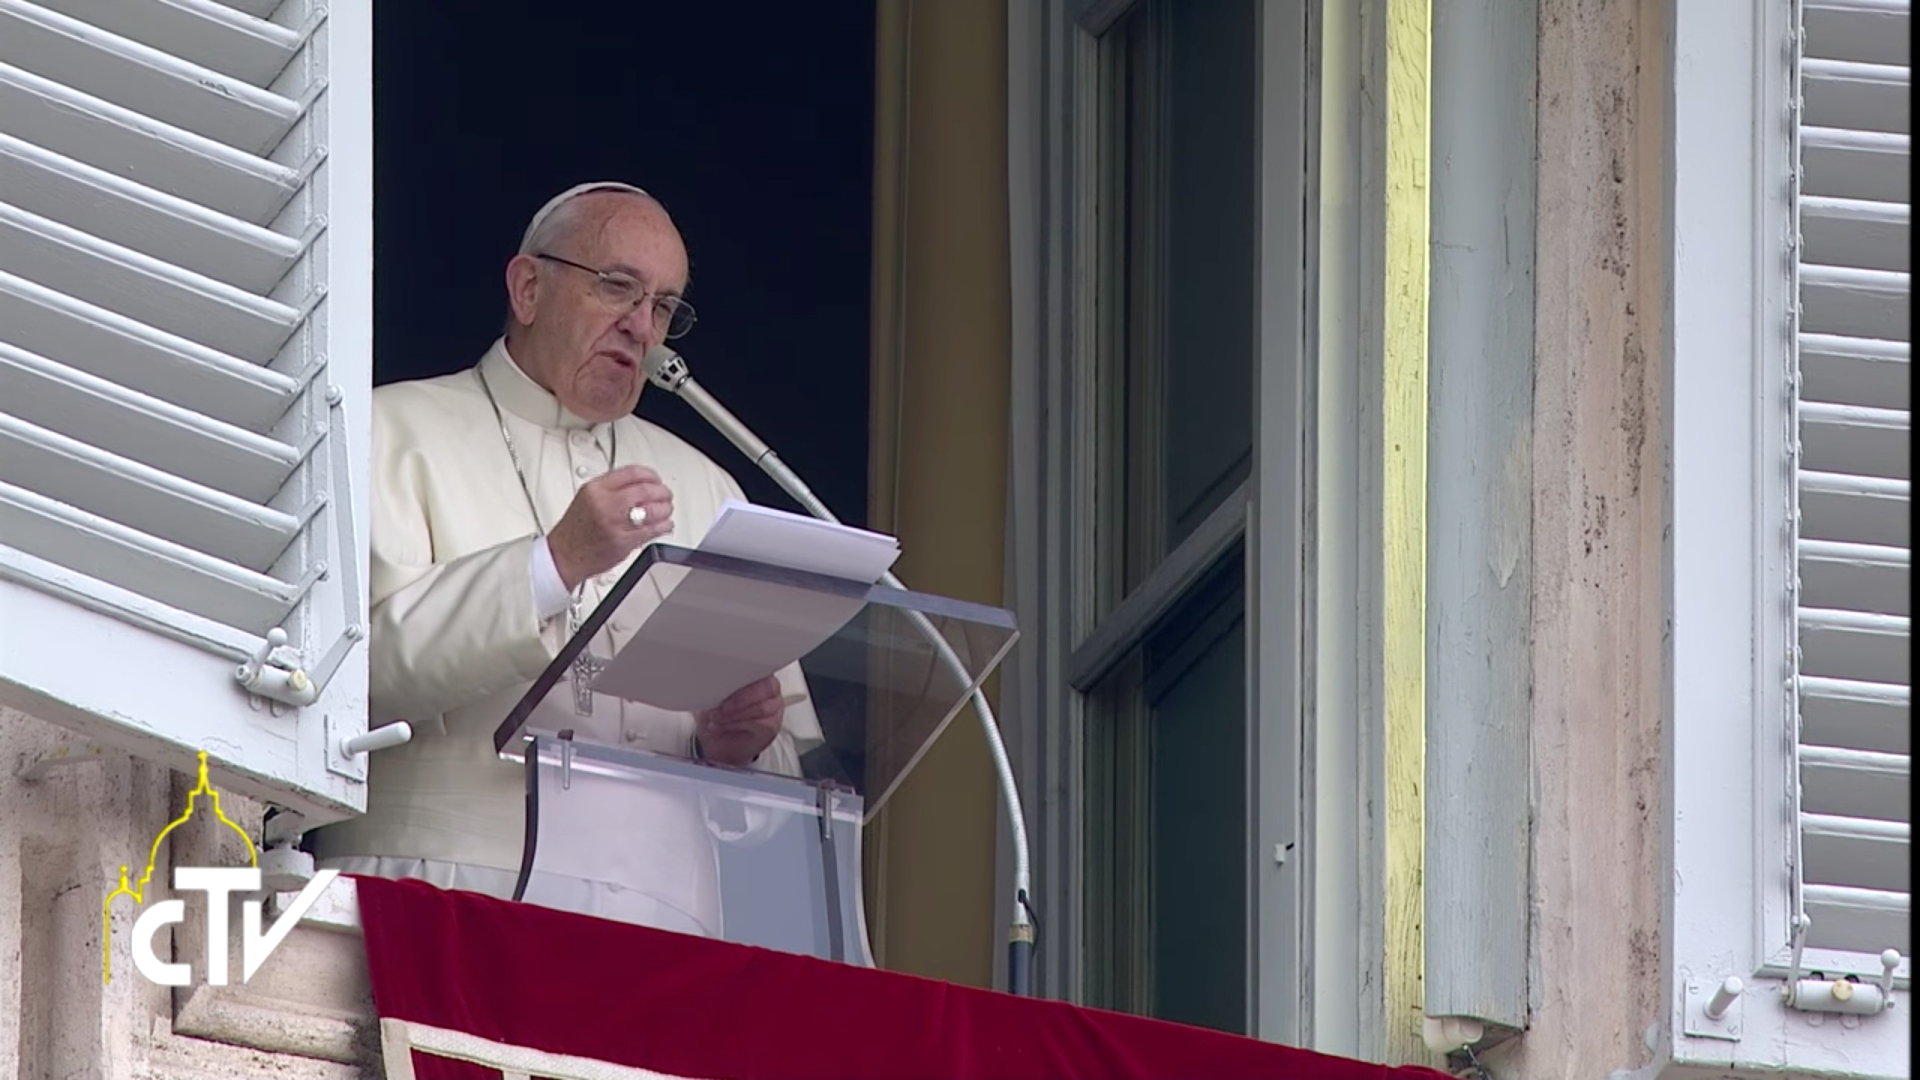 Ce dimanche 8 mars, le pape n'apparaîtra pas à fenêtre du Palais apostolique, comme habituellement pour l'Angélus | © Capture d'écran CTV